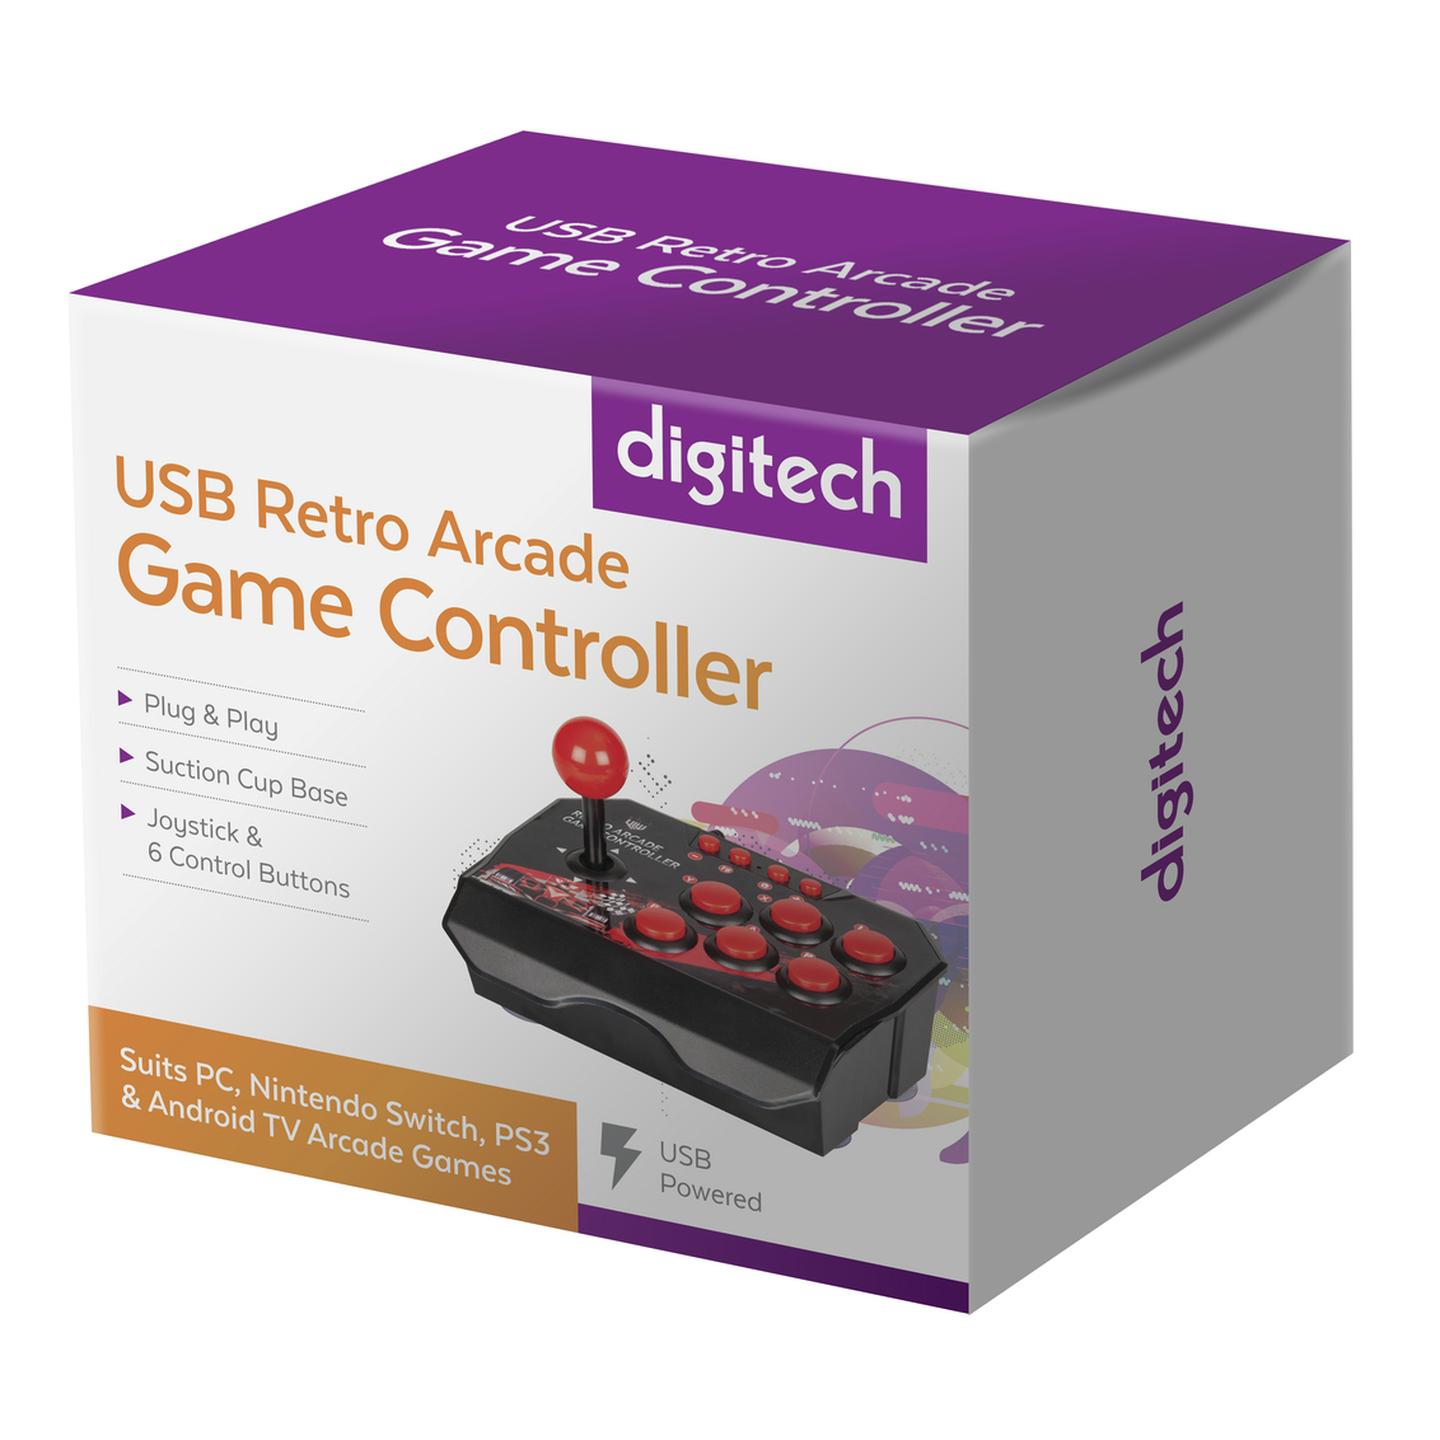 USB Retro Arcade Game Controller